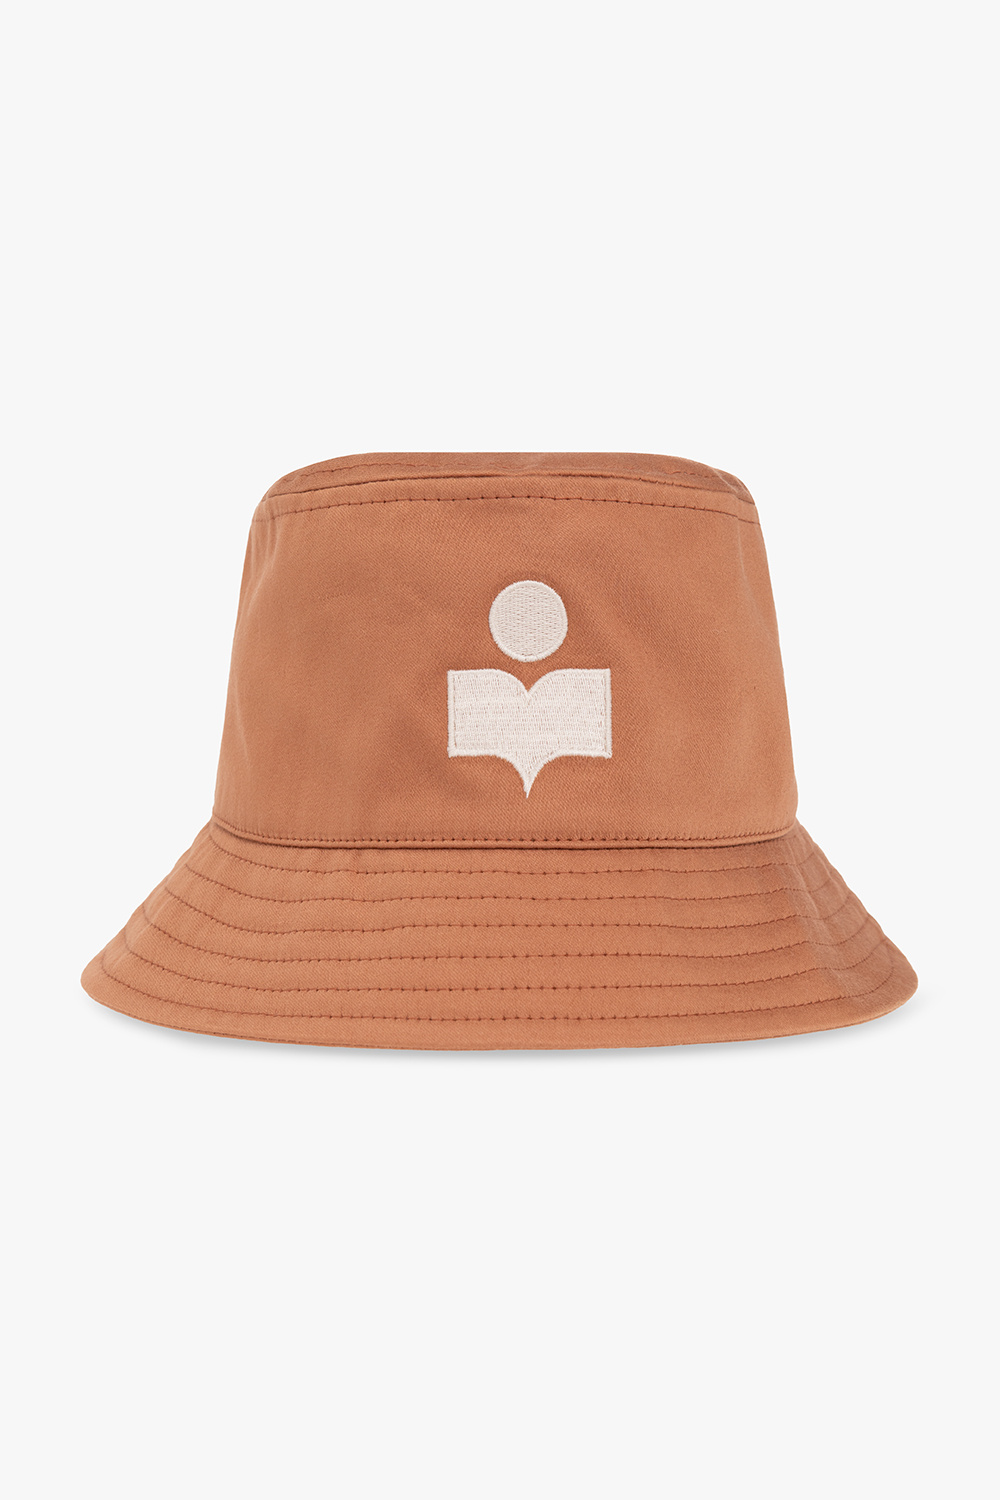 MARANT ‘Haley’ bucket hat